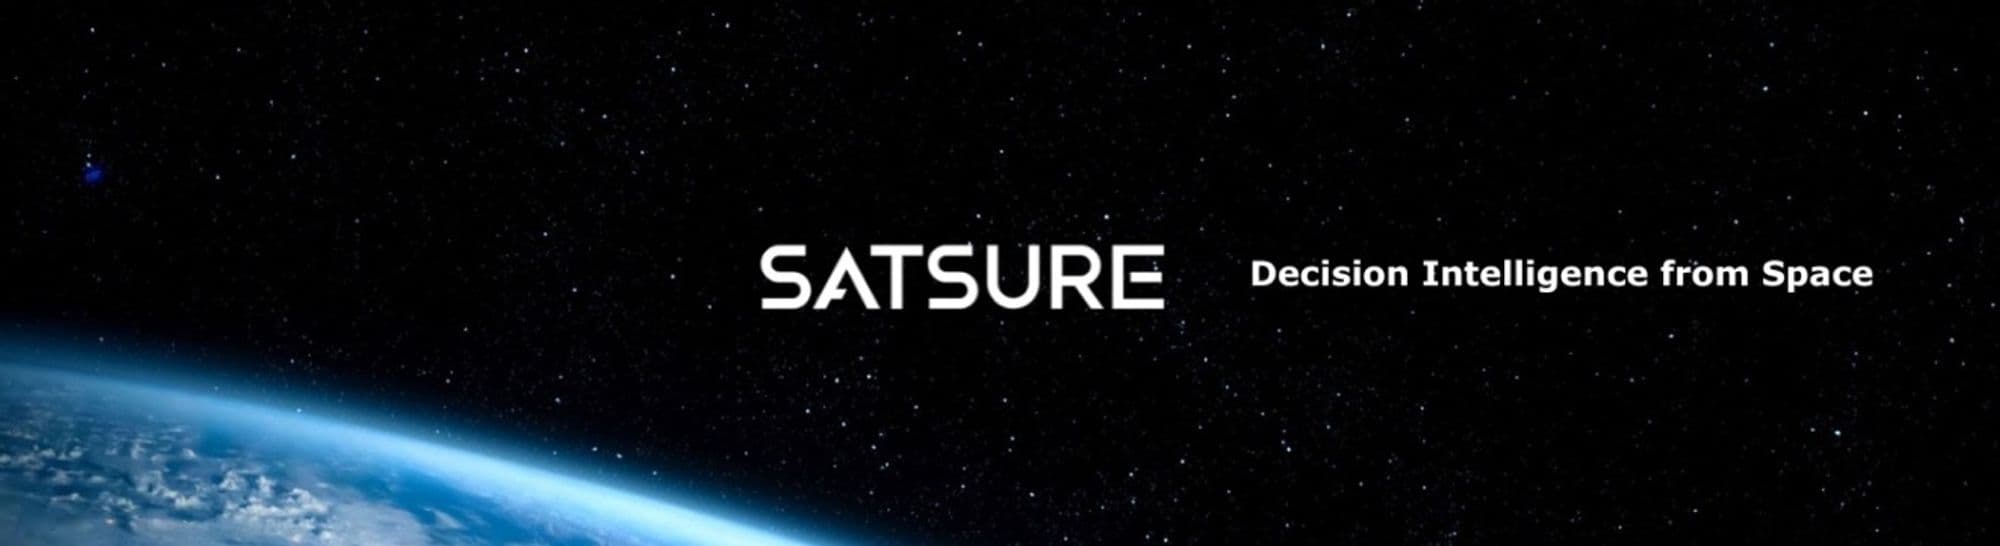 SatSure Cover Image